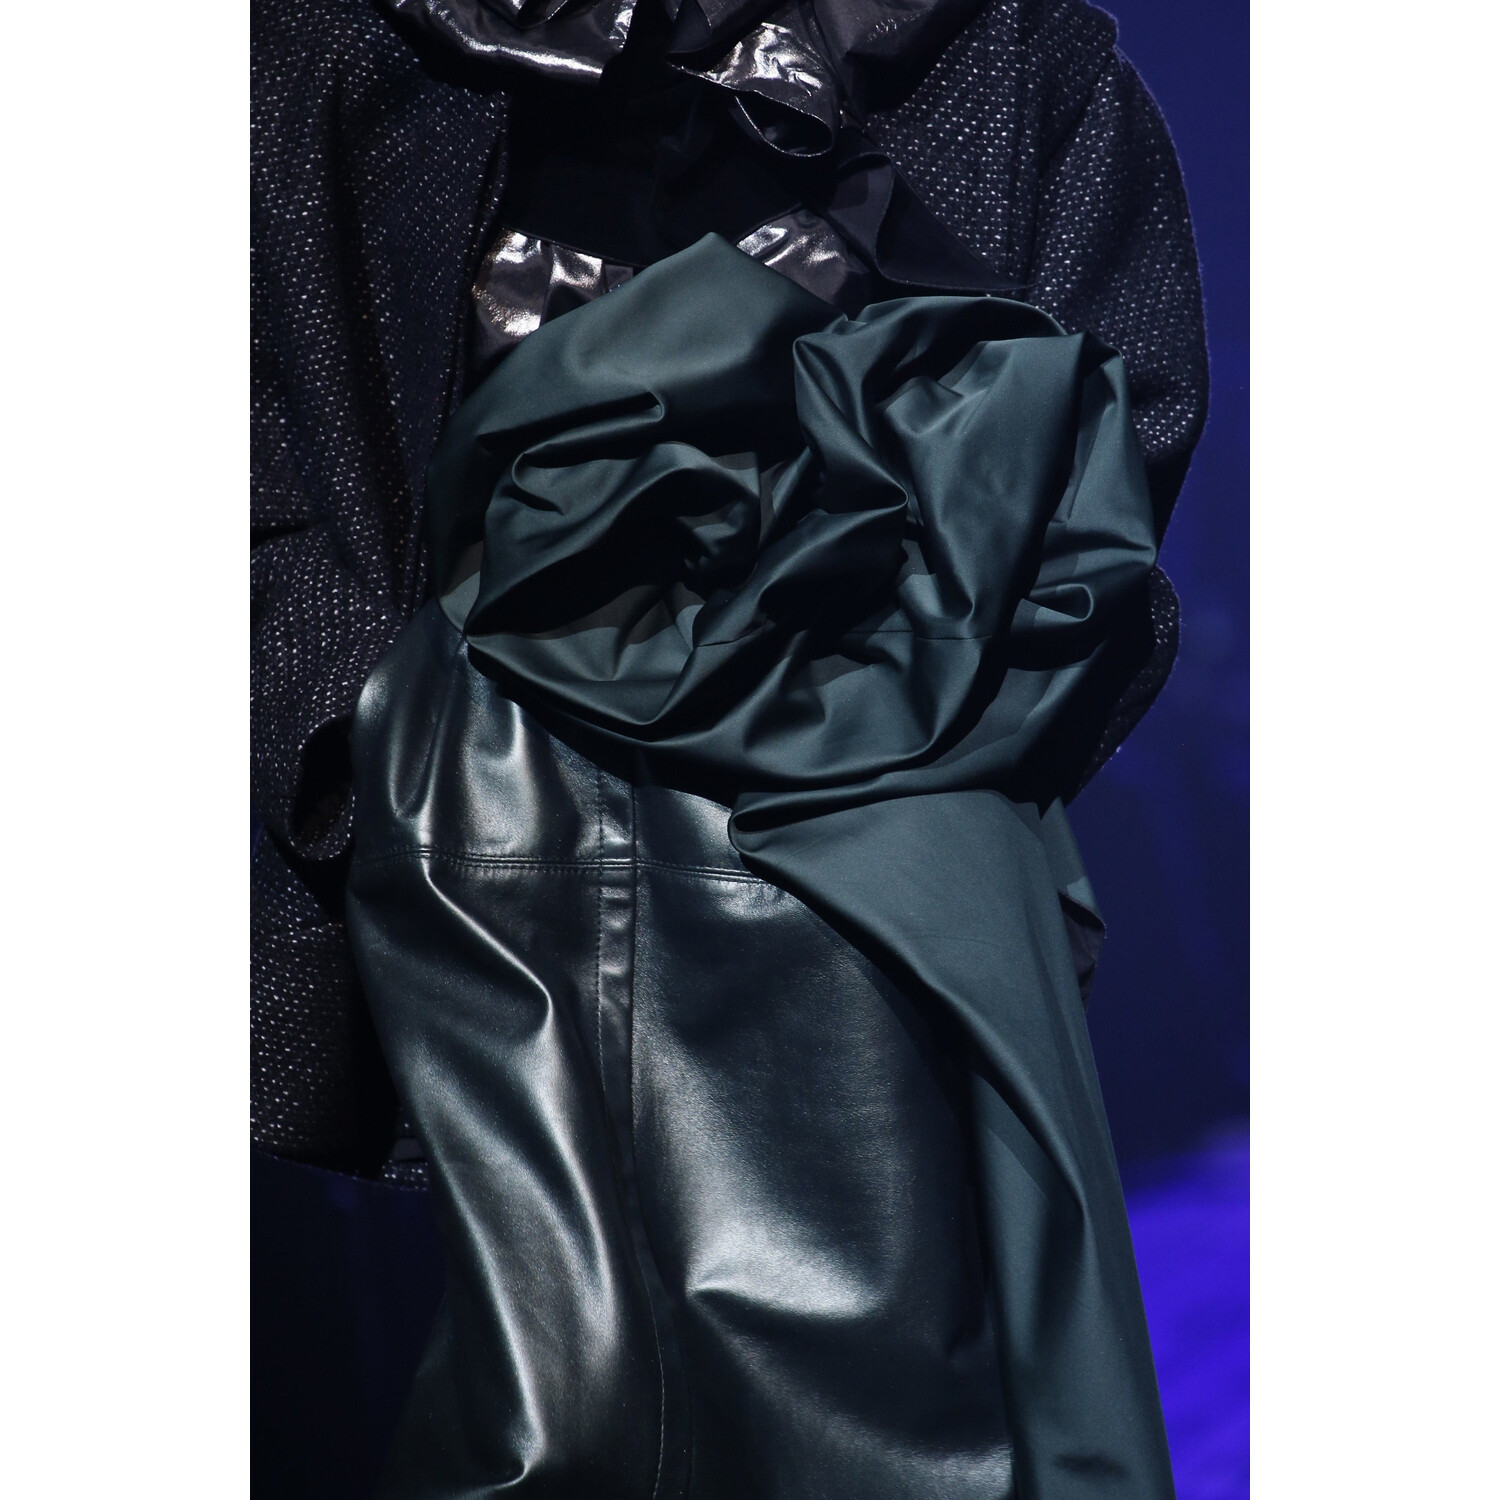 Фото Details Marc Jacobs Fall 2018 Ready-to-Wear Детали Марк Джейкобс осень зима 2018 коллекция неделя моды в Нью Йорке Mainstyles